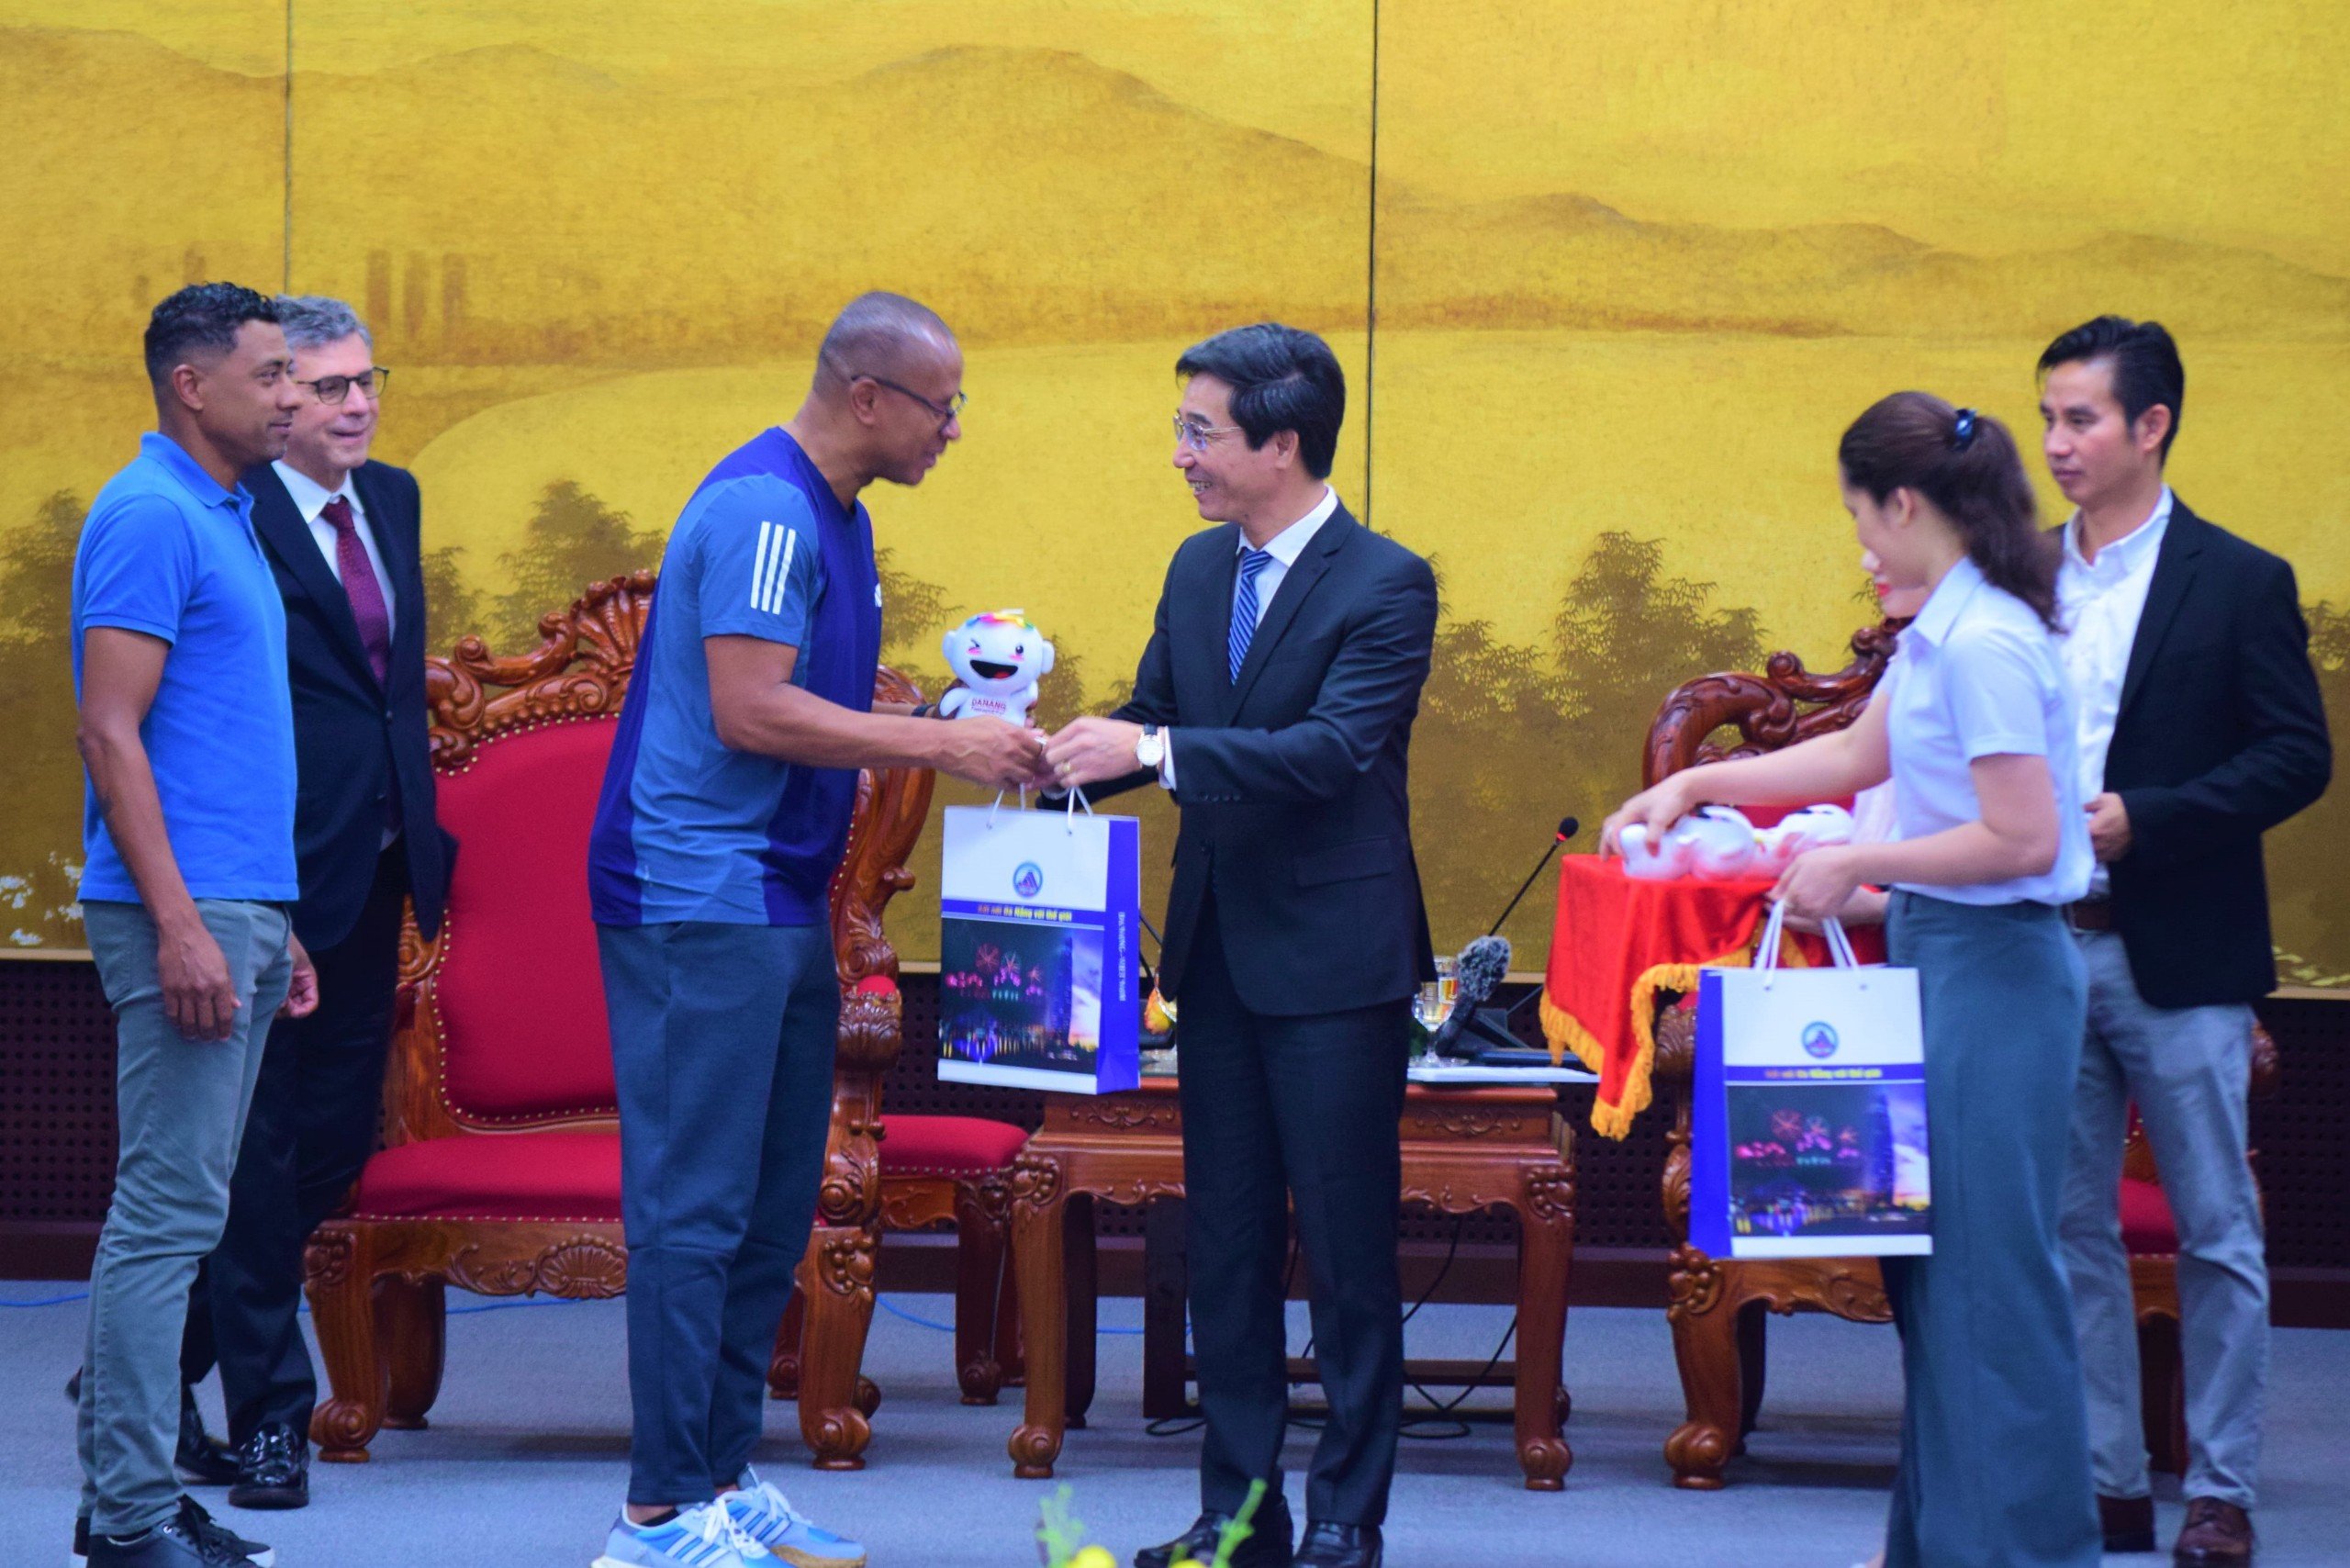 Les dirigeants de la ville de Da Nang se sont rencontrés et ont offert des cadeaux à de célèbres footballeurs brésiliens